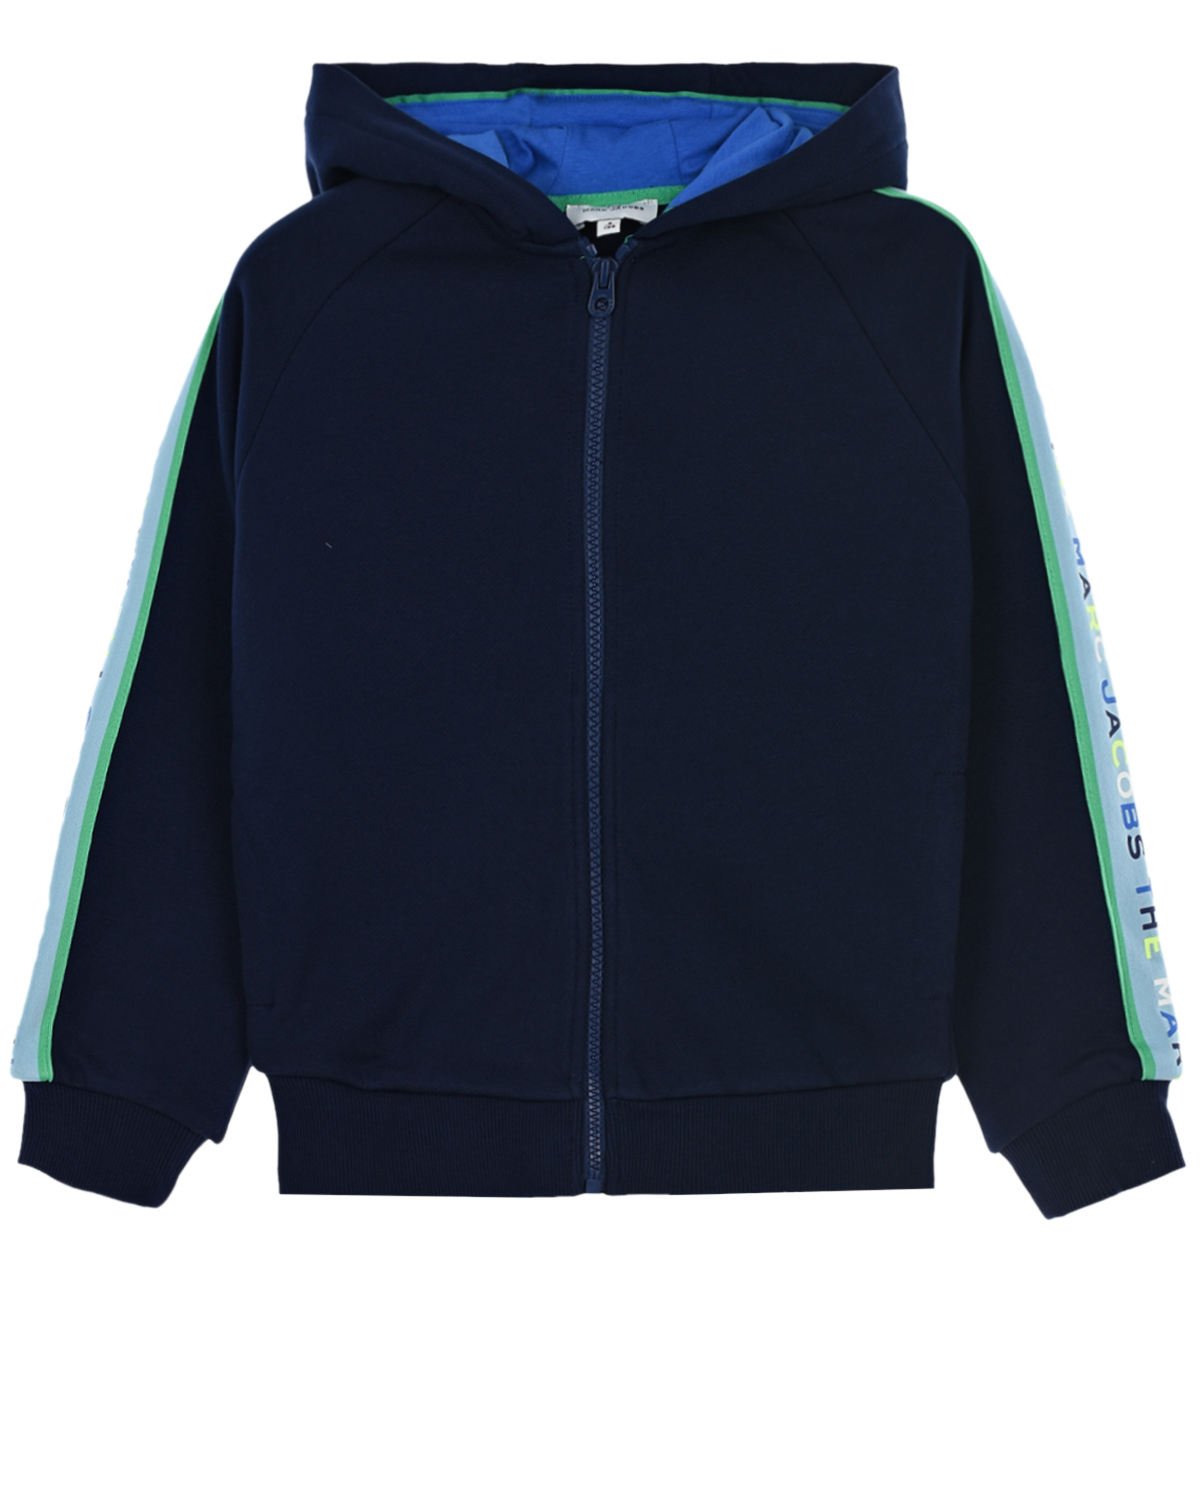 Купить Темно-синяя спортивная куртка с лампасами Marc Jacobs (The) детское, Синий, 100%хлопок, 98%хлопок+2%эластан